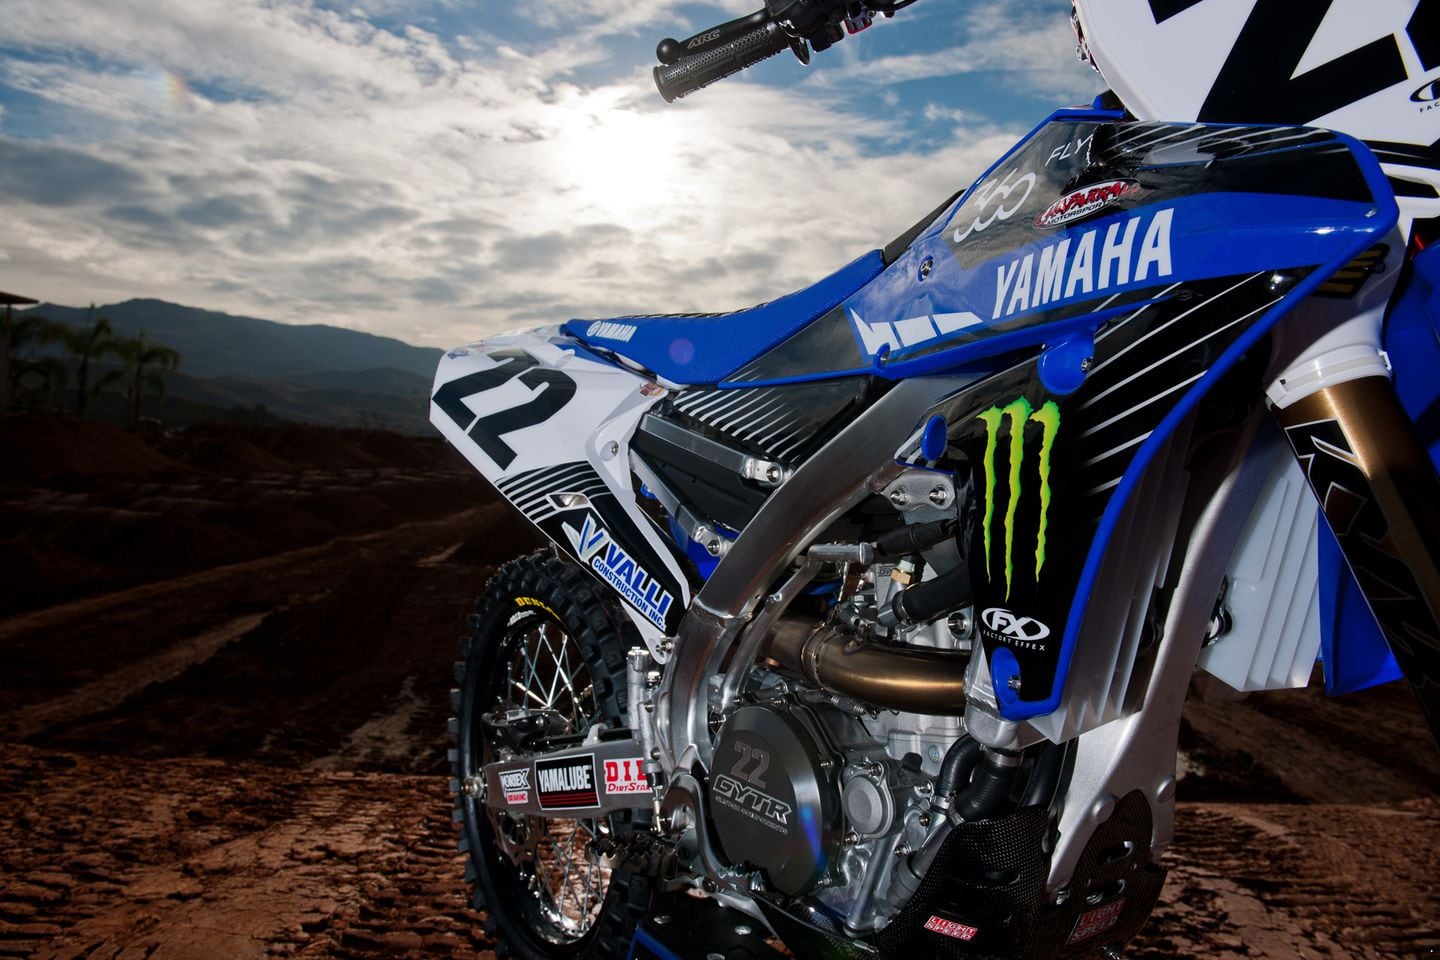 CHAD REED Yamaha YZF450 Supercross Monster Energy Dirt Bike motocross